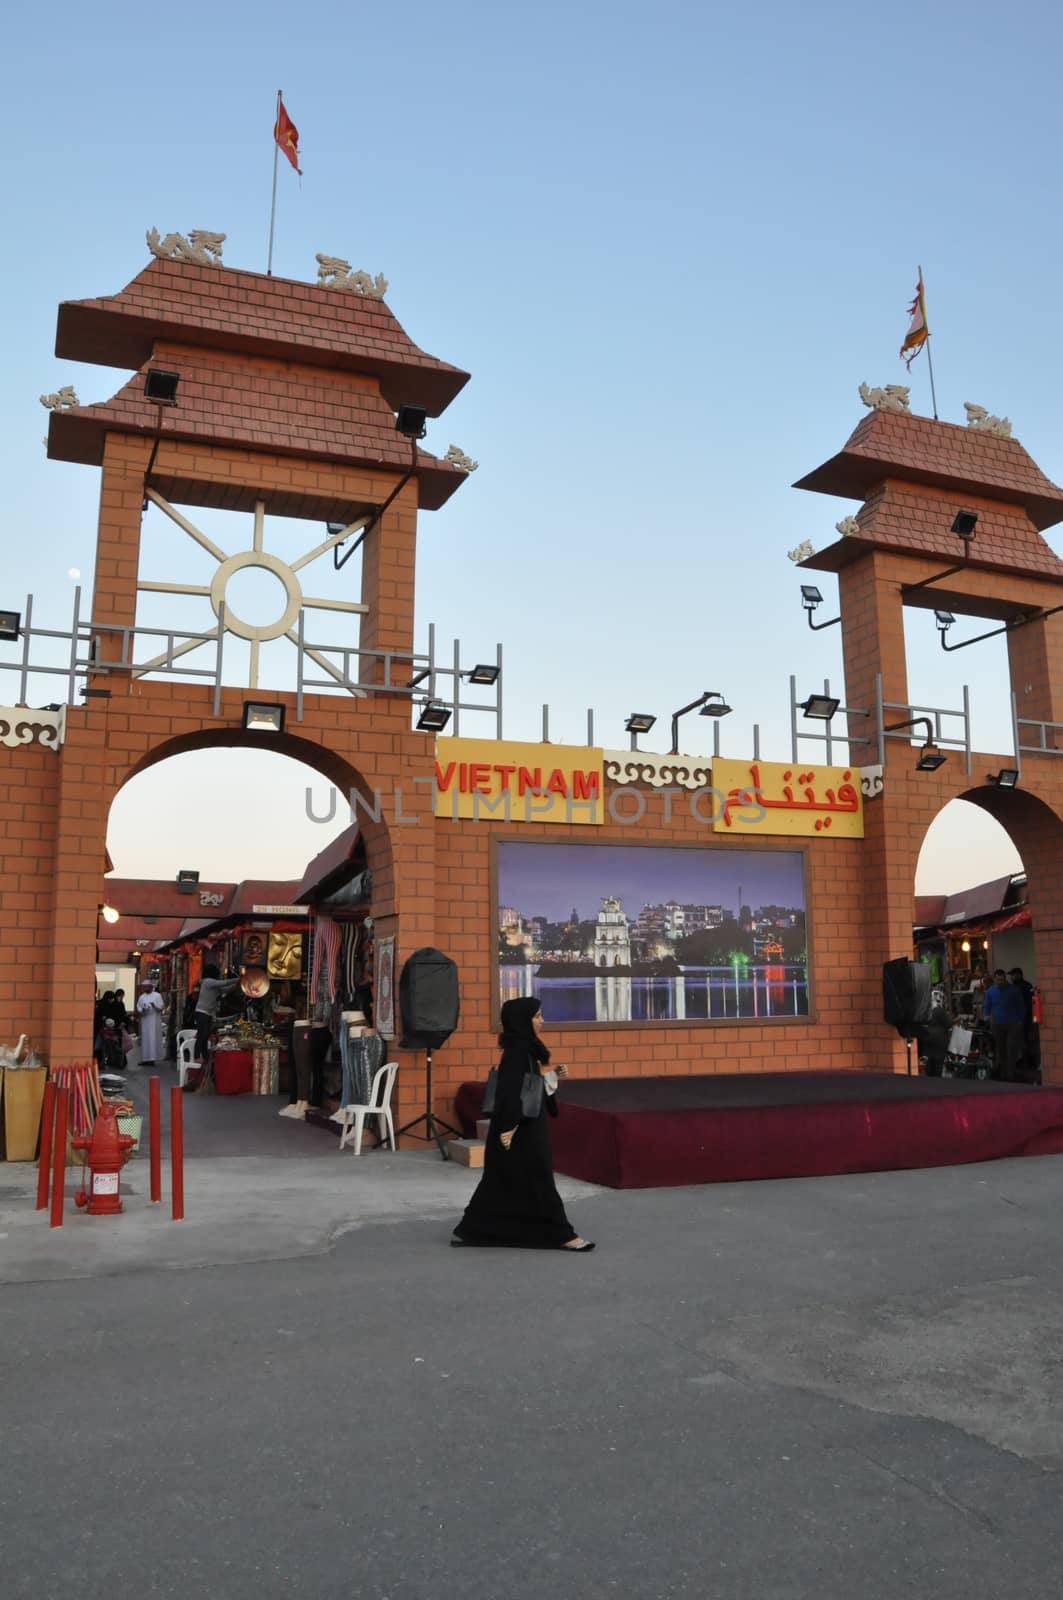 Vietnam pavilion at Global Village in Dubai, UAE by sainaniritu